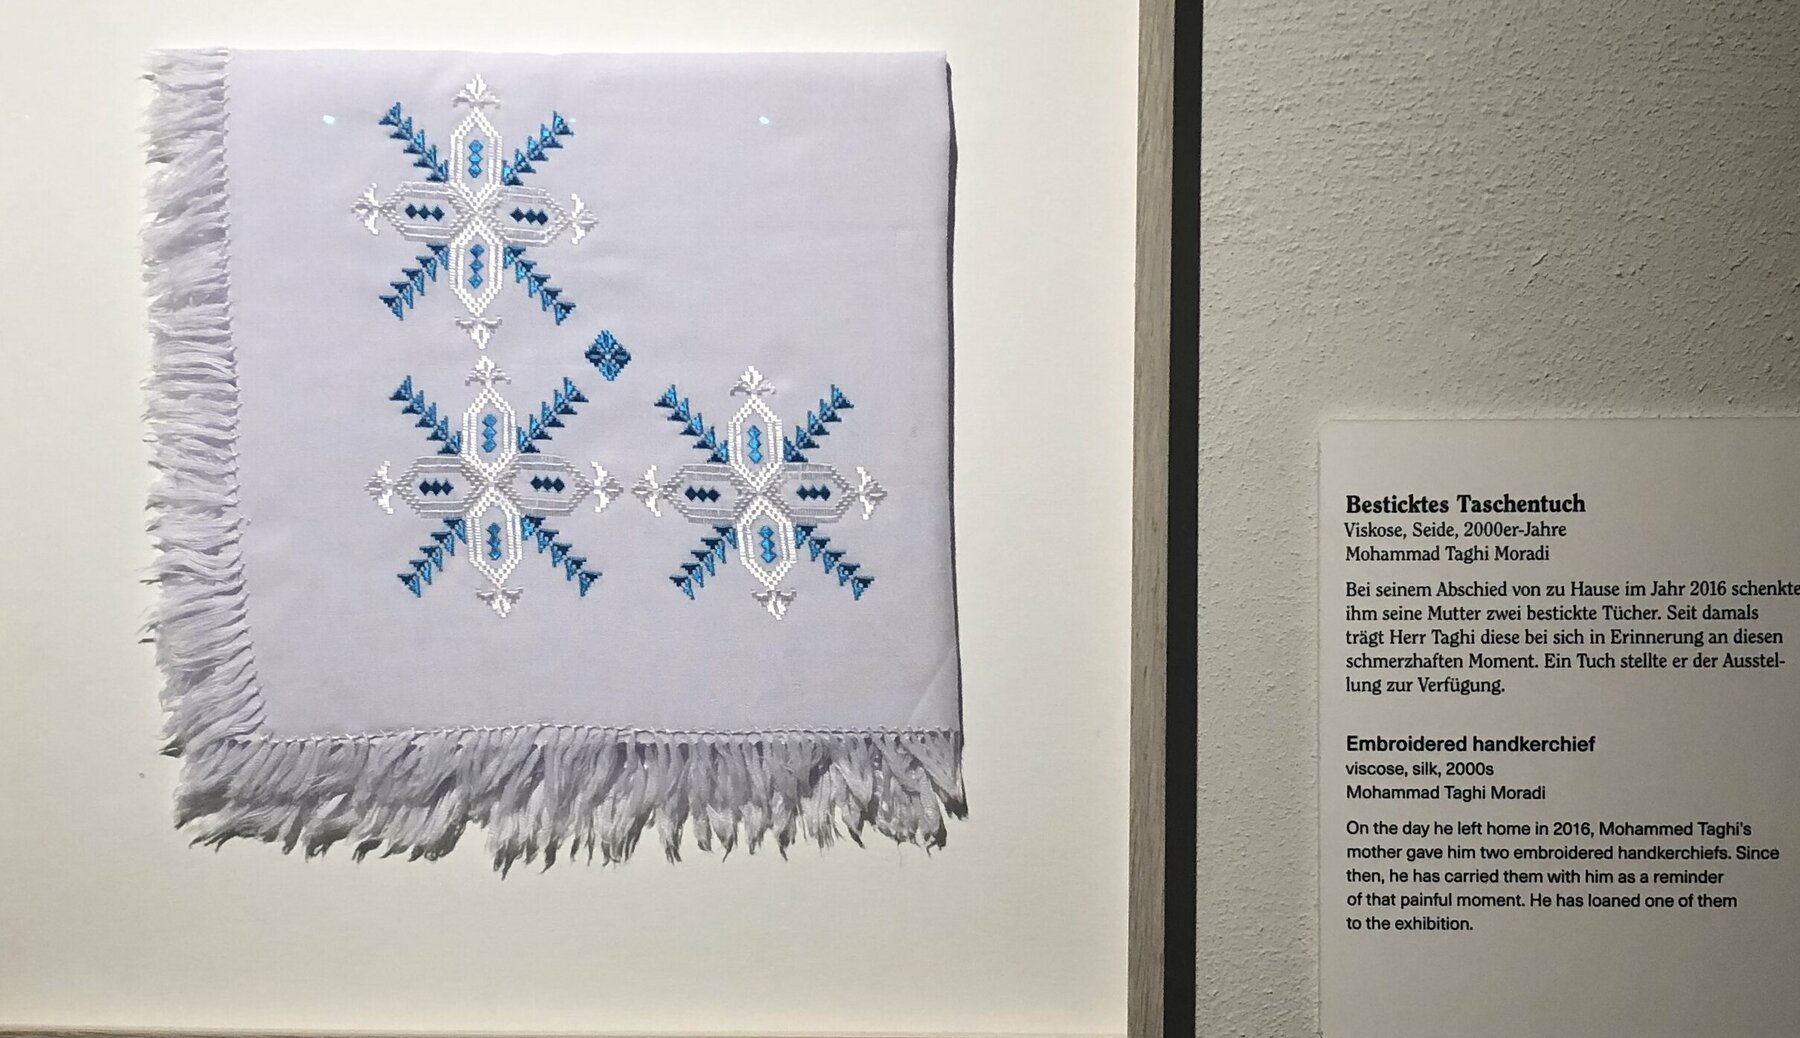 Besticktes Taschentuch in Rahmen an der Wand in der Ausstellung. Ein Geschenk der Mutter von Mohammad Taghi Moradi bei seinem Abschied 2016 aus Afghanistan. 